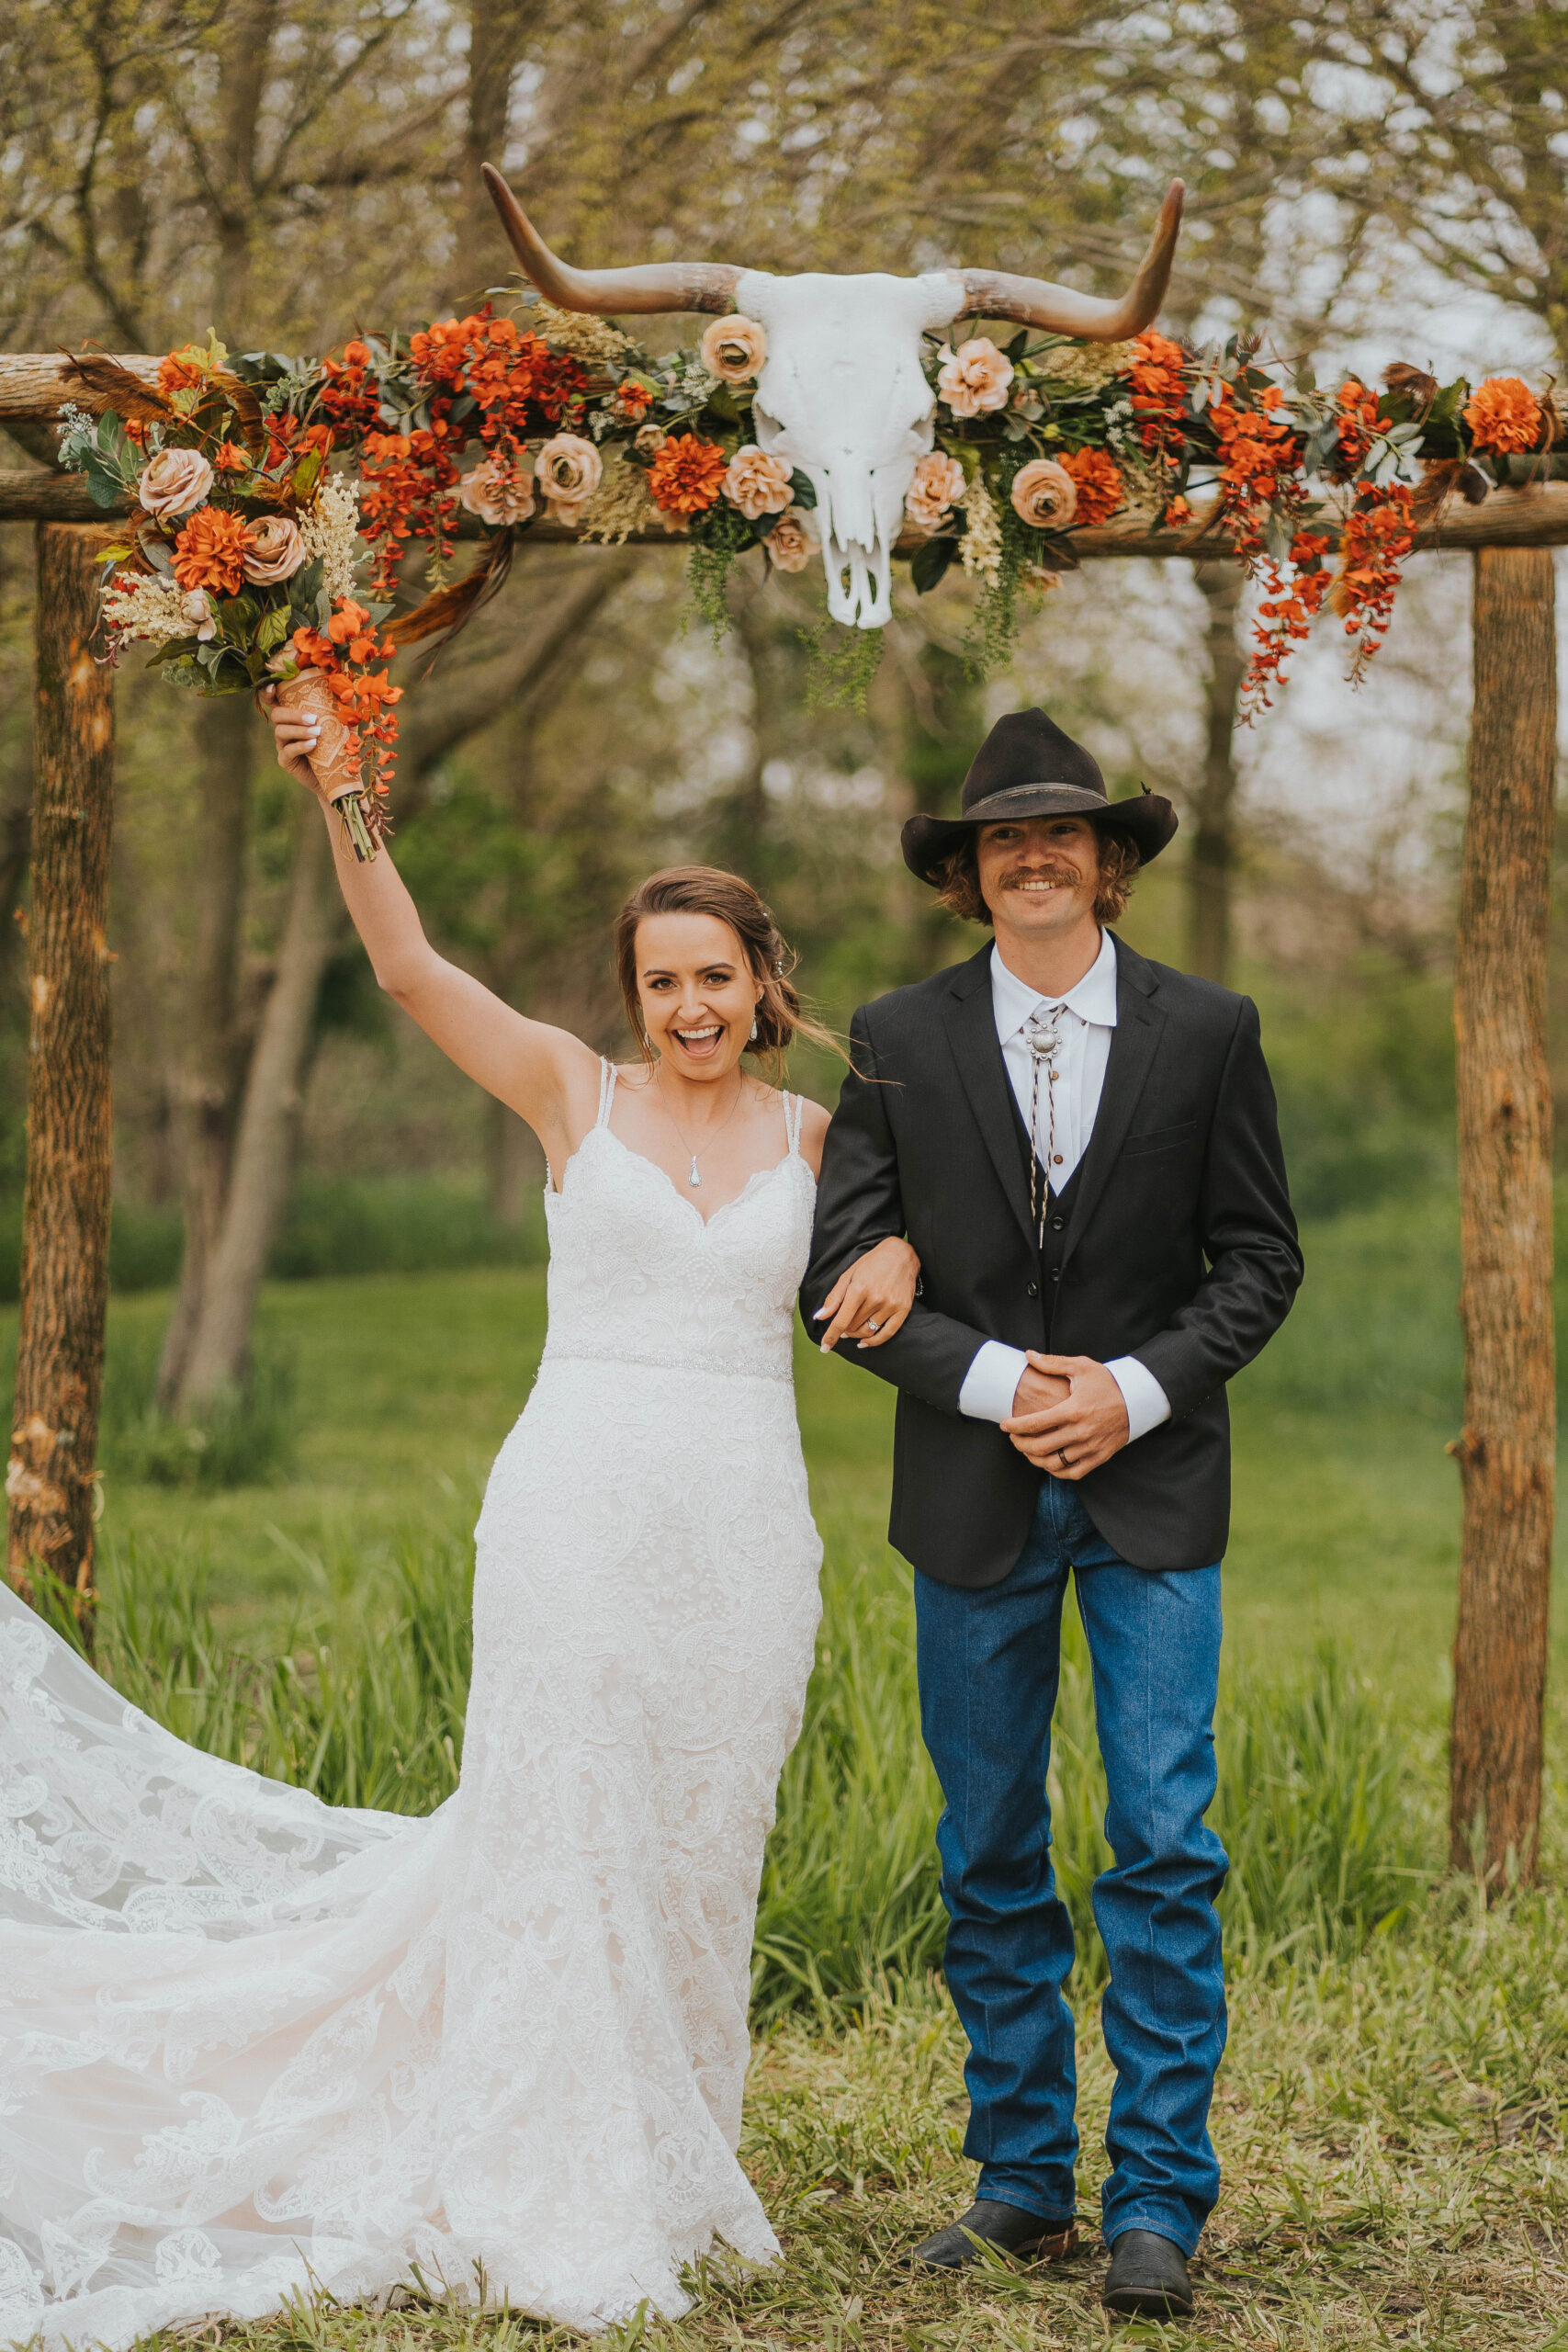 Wedding Ceremony on Farm near Davenport Iowa